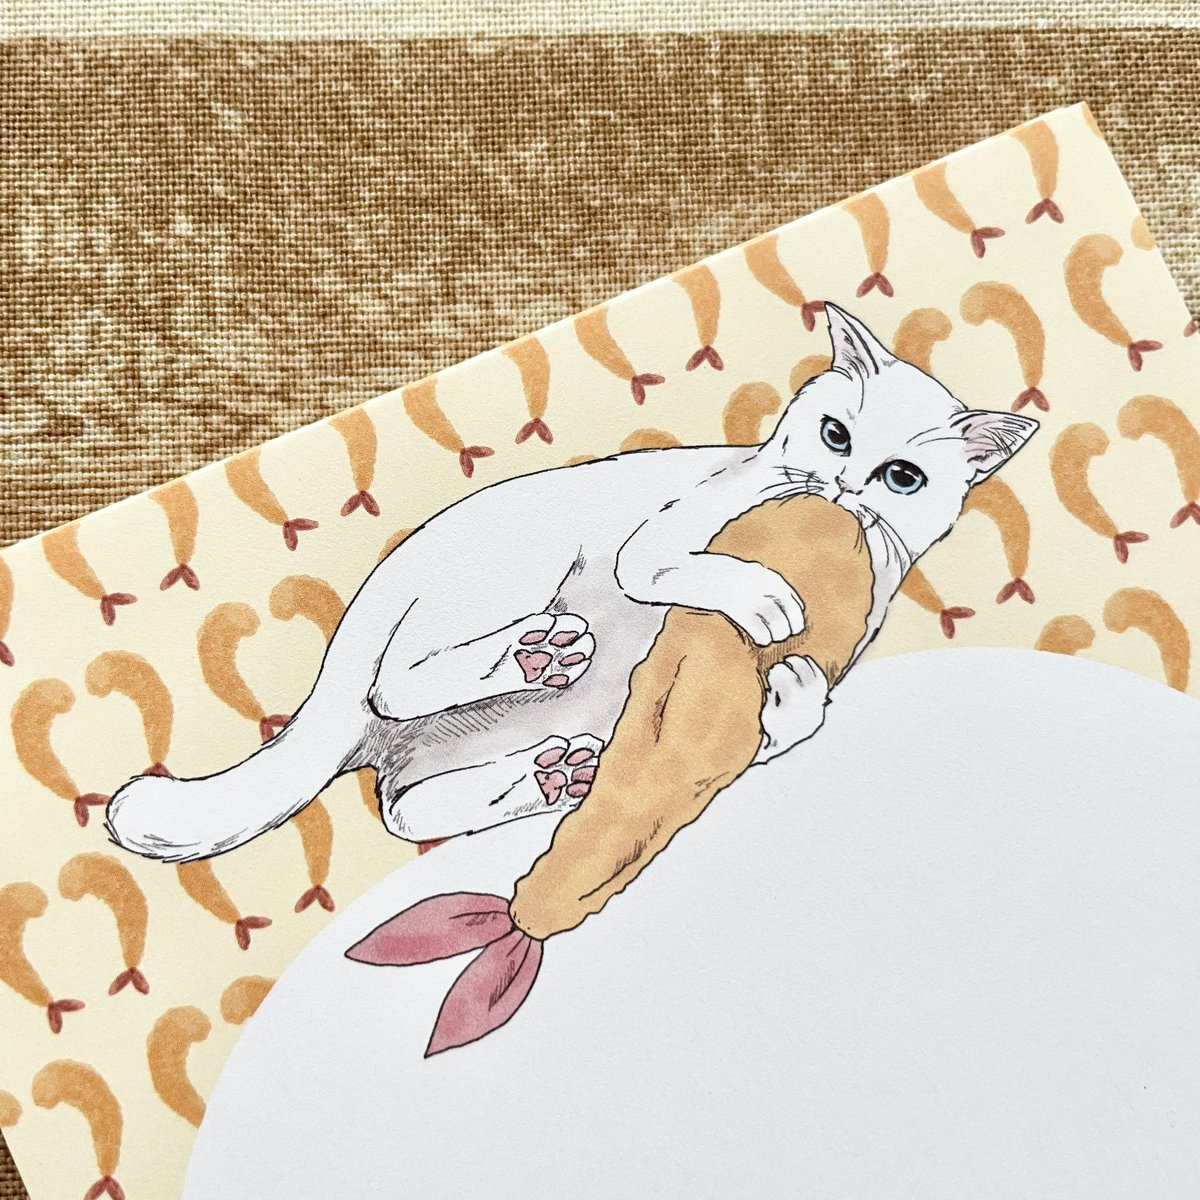 「あっ、でも、白いコも描いてました 」|nemunoki paper itemのイラスト